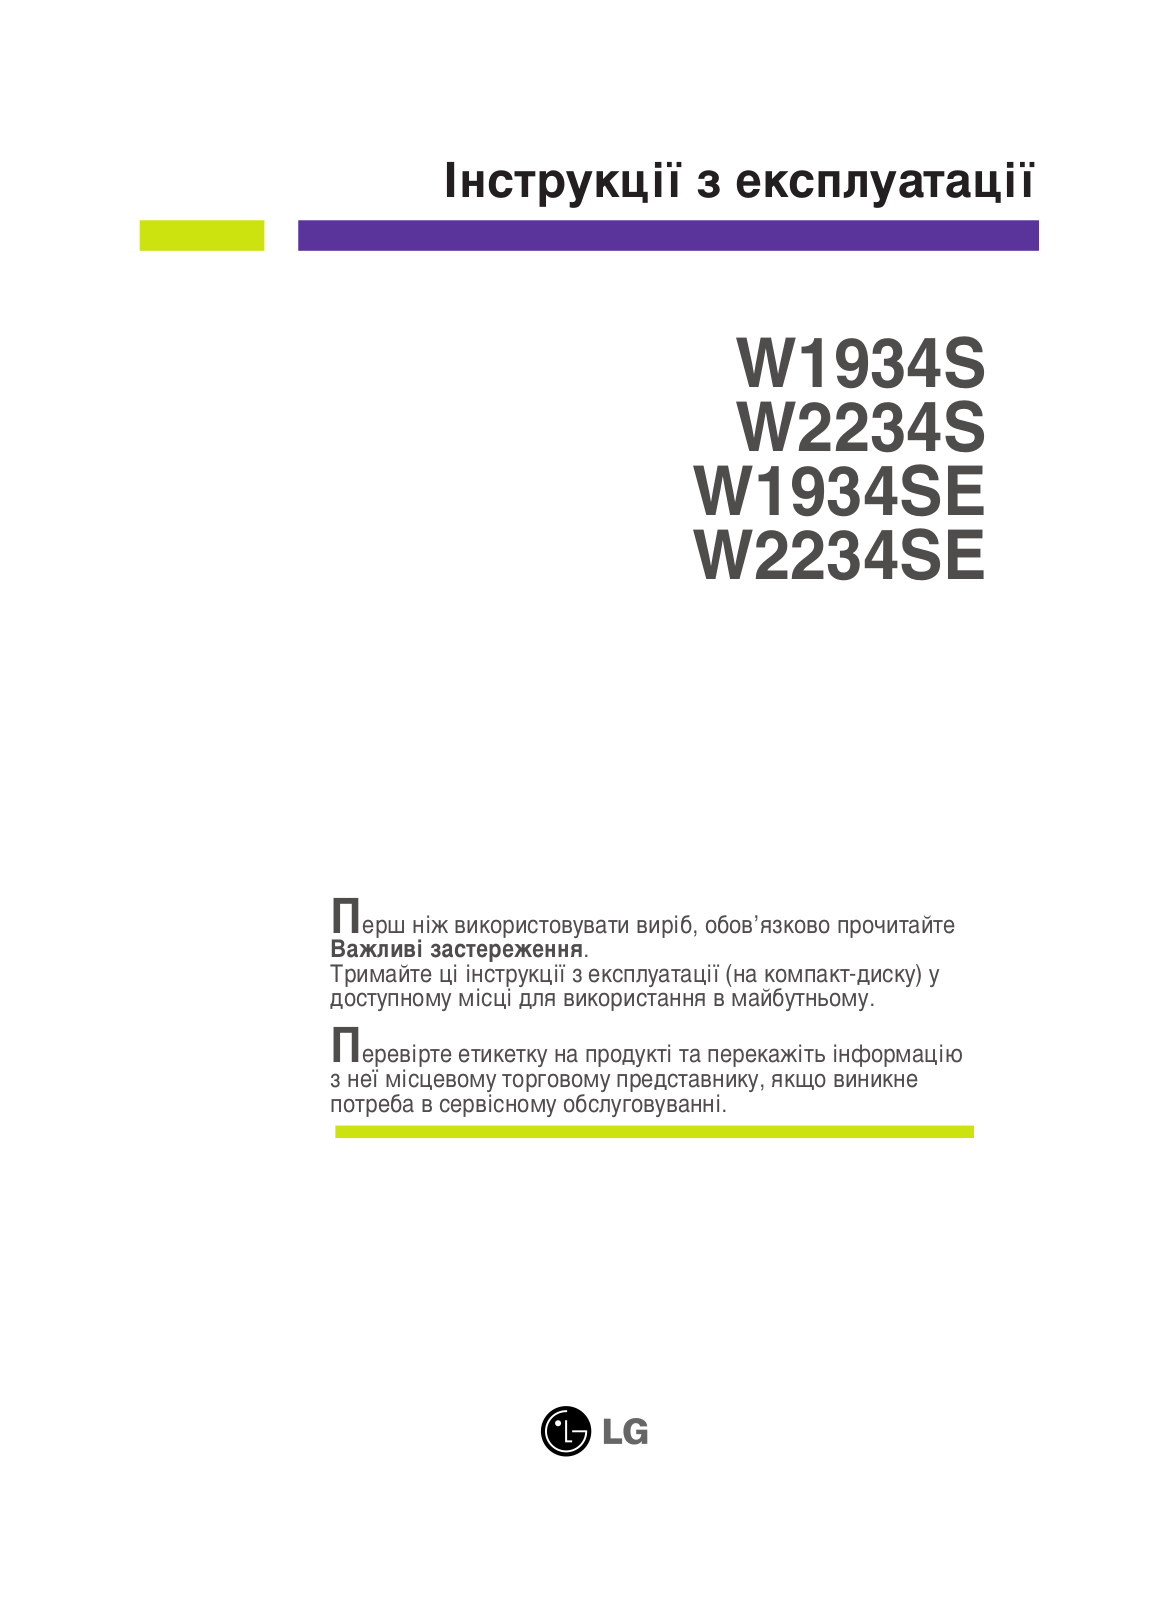 LG W2234S-BN, W1934S-SN, W1934S-BN, W2234S-SN User Manual